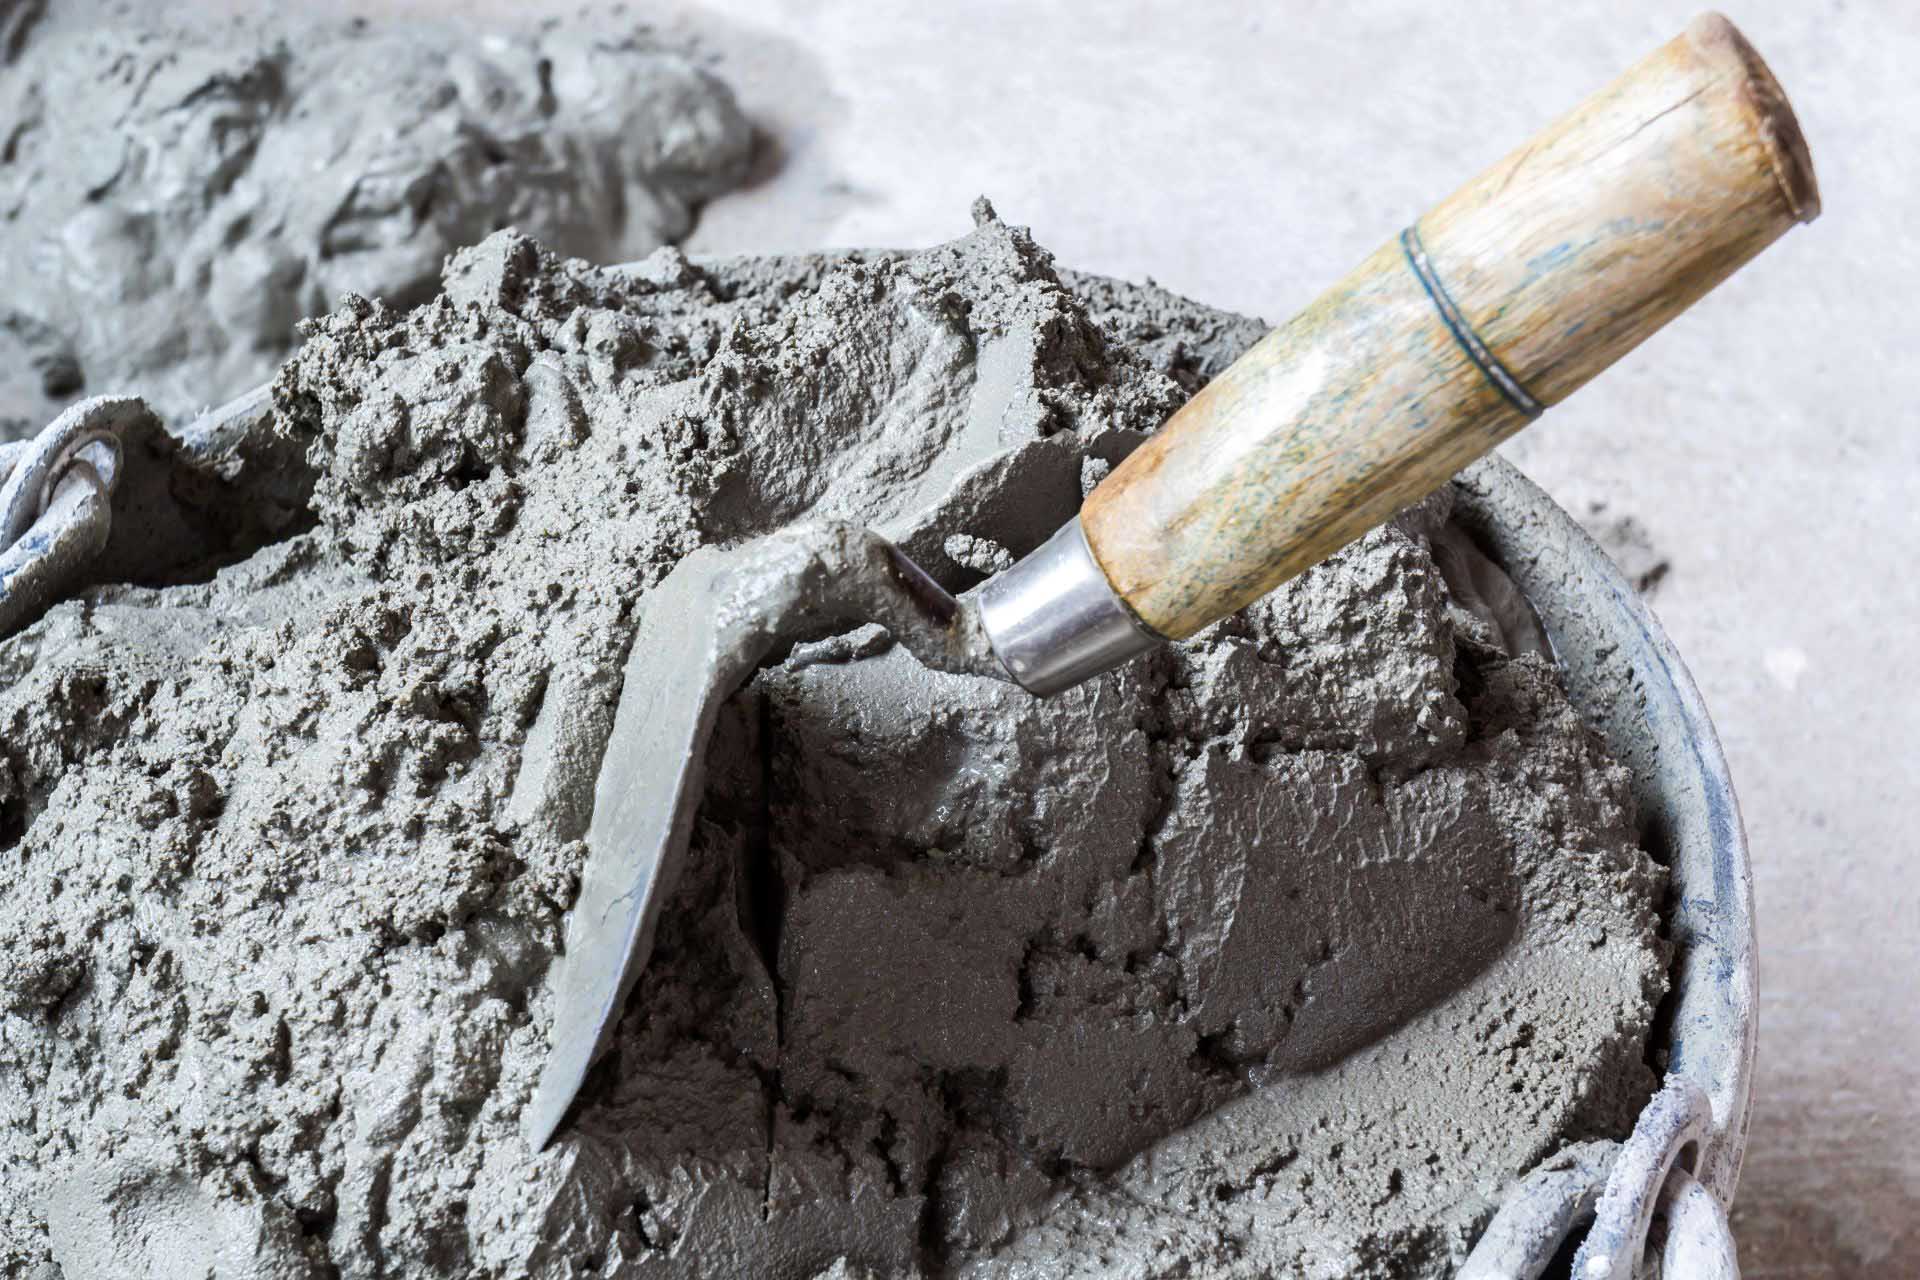 ГОСТ Р 56836-2016 «Оценка соответствия. Правила сертификации цементов» будет изменен